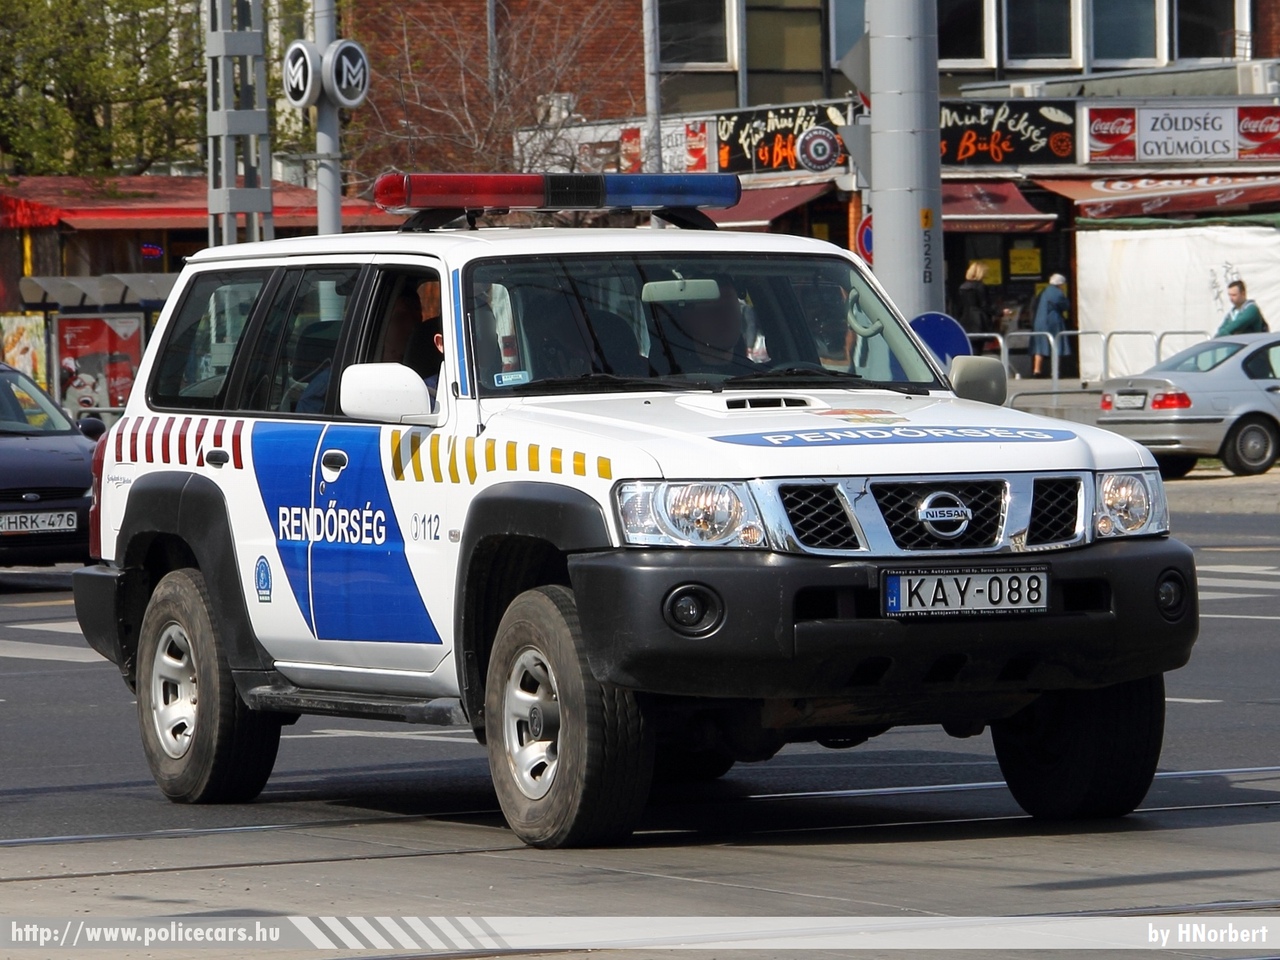 Nissan Patrol, fotó: HNorbert
Keywords: magyar Magyarország rendőr rendőrautó rendőrség Hungary hungarian police policecar KAY-088